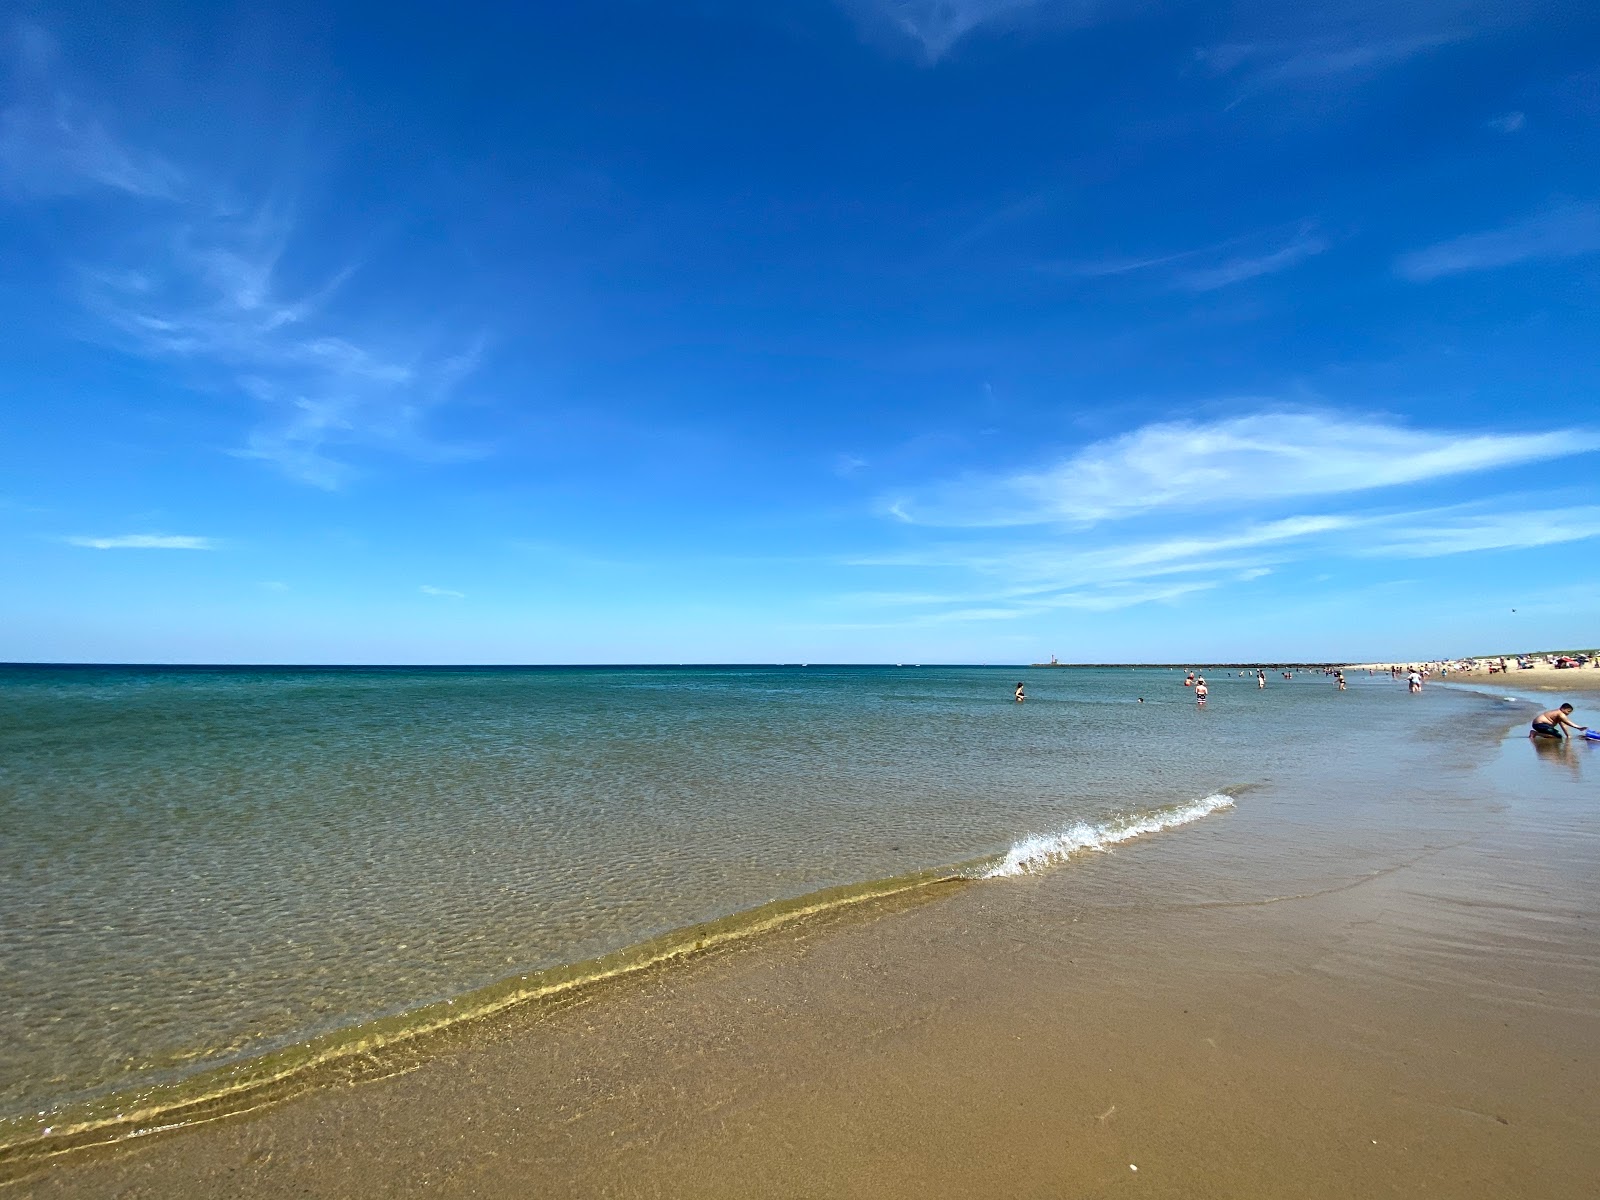 Scusset beach'in fotoğrafı parlak kum yüzey ile